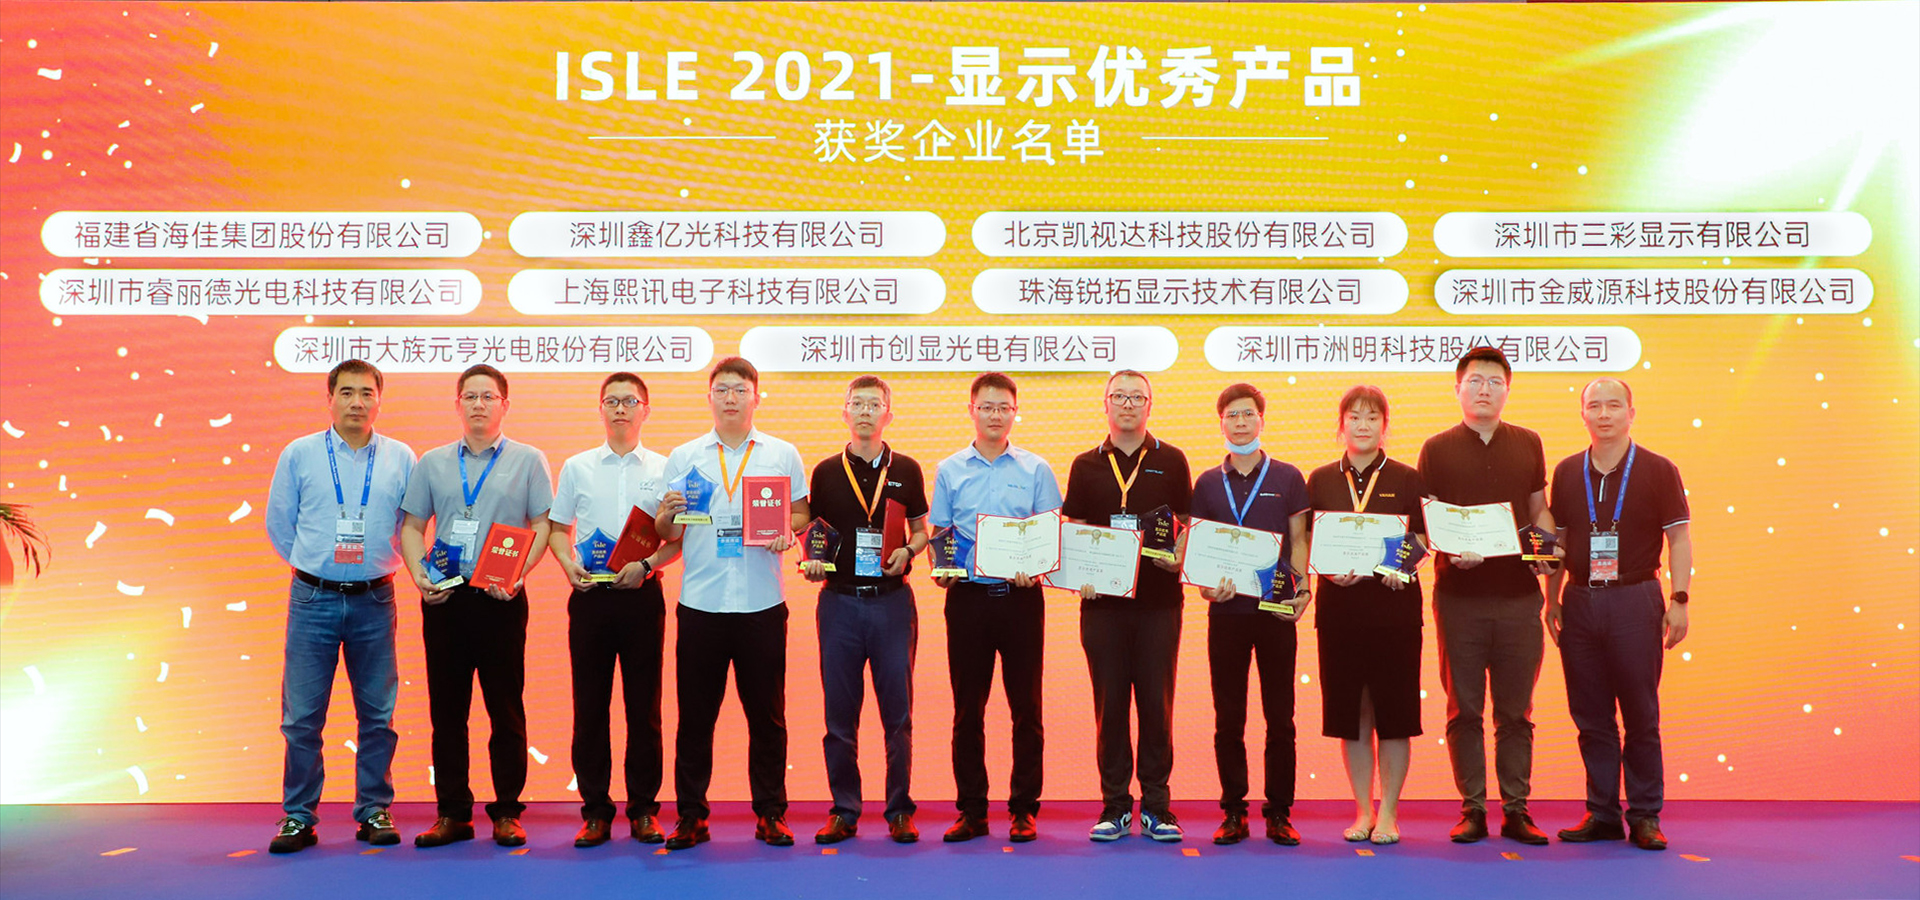 凯视达 Kommander F2 多媒体服务器荣获“ISLE 2021 显示优秀产品奖”